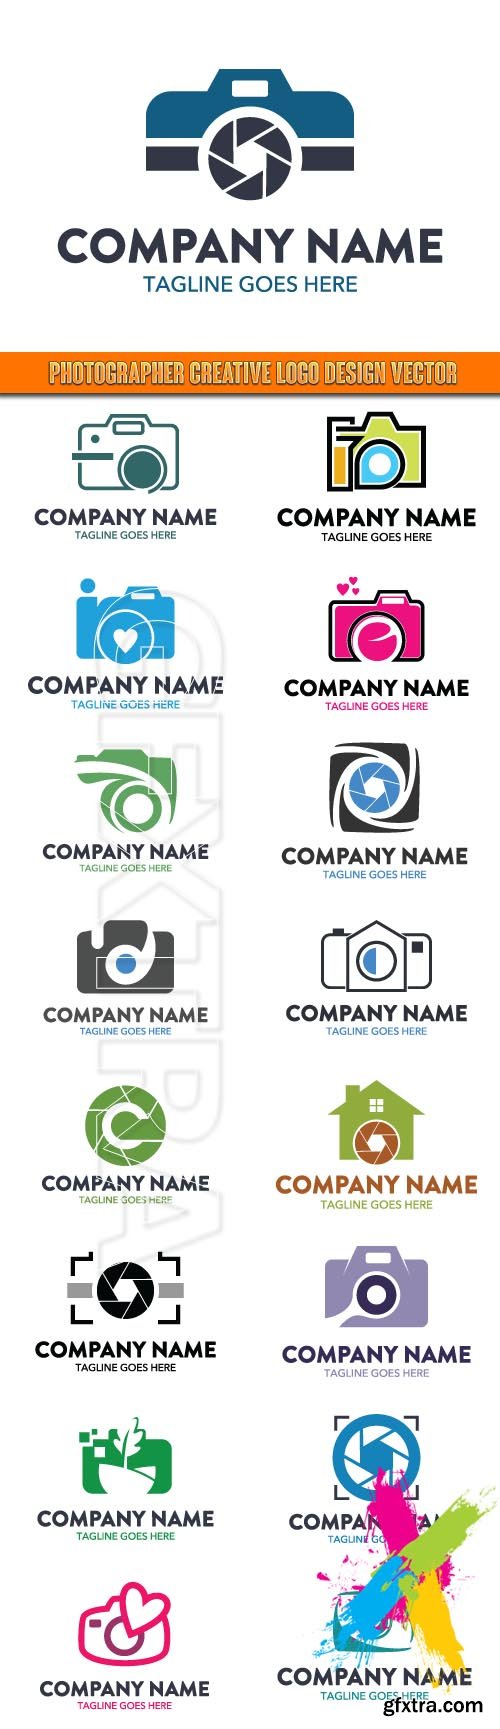 Photographer Creative Logo Design vector